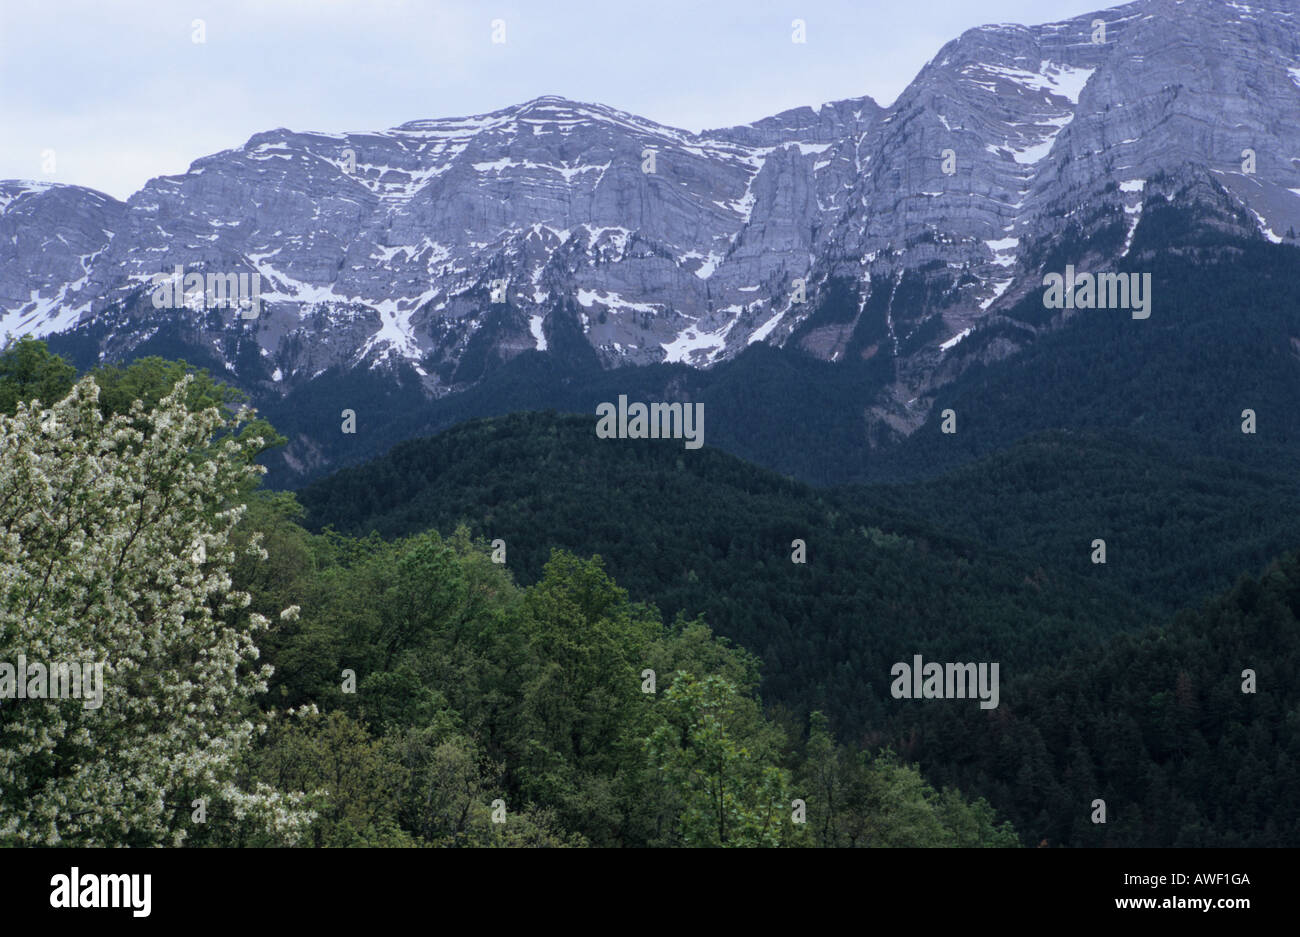 Des paysages de montagne dans les montagnes des Pyrénées en Catalogne Espagne Banque D'Images